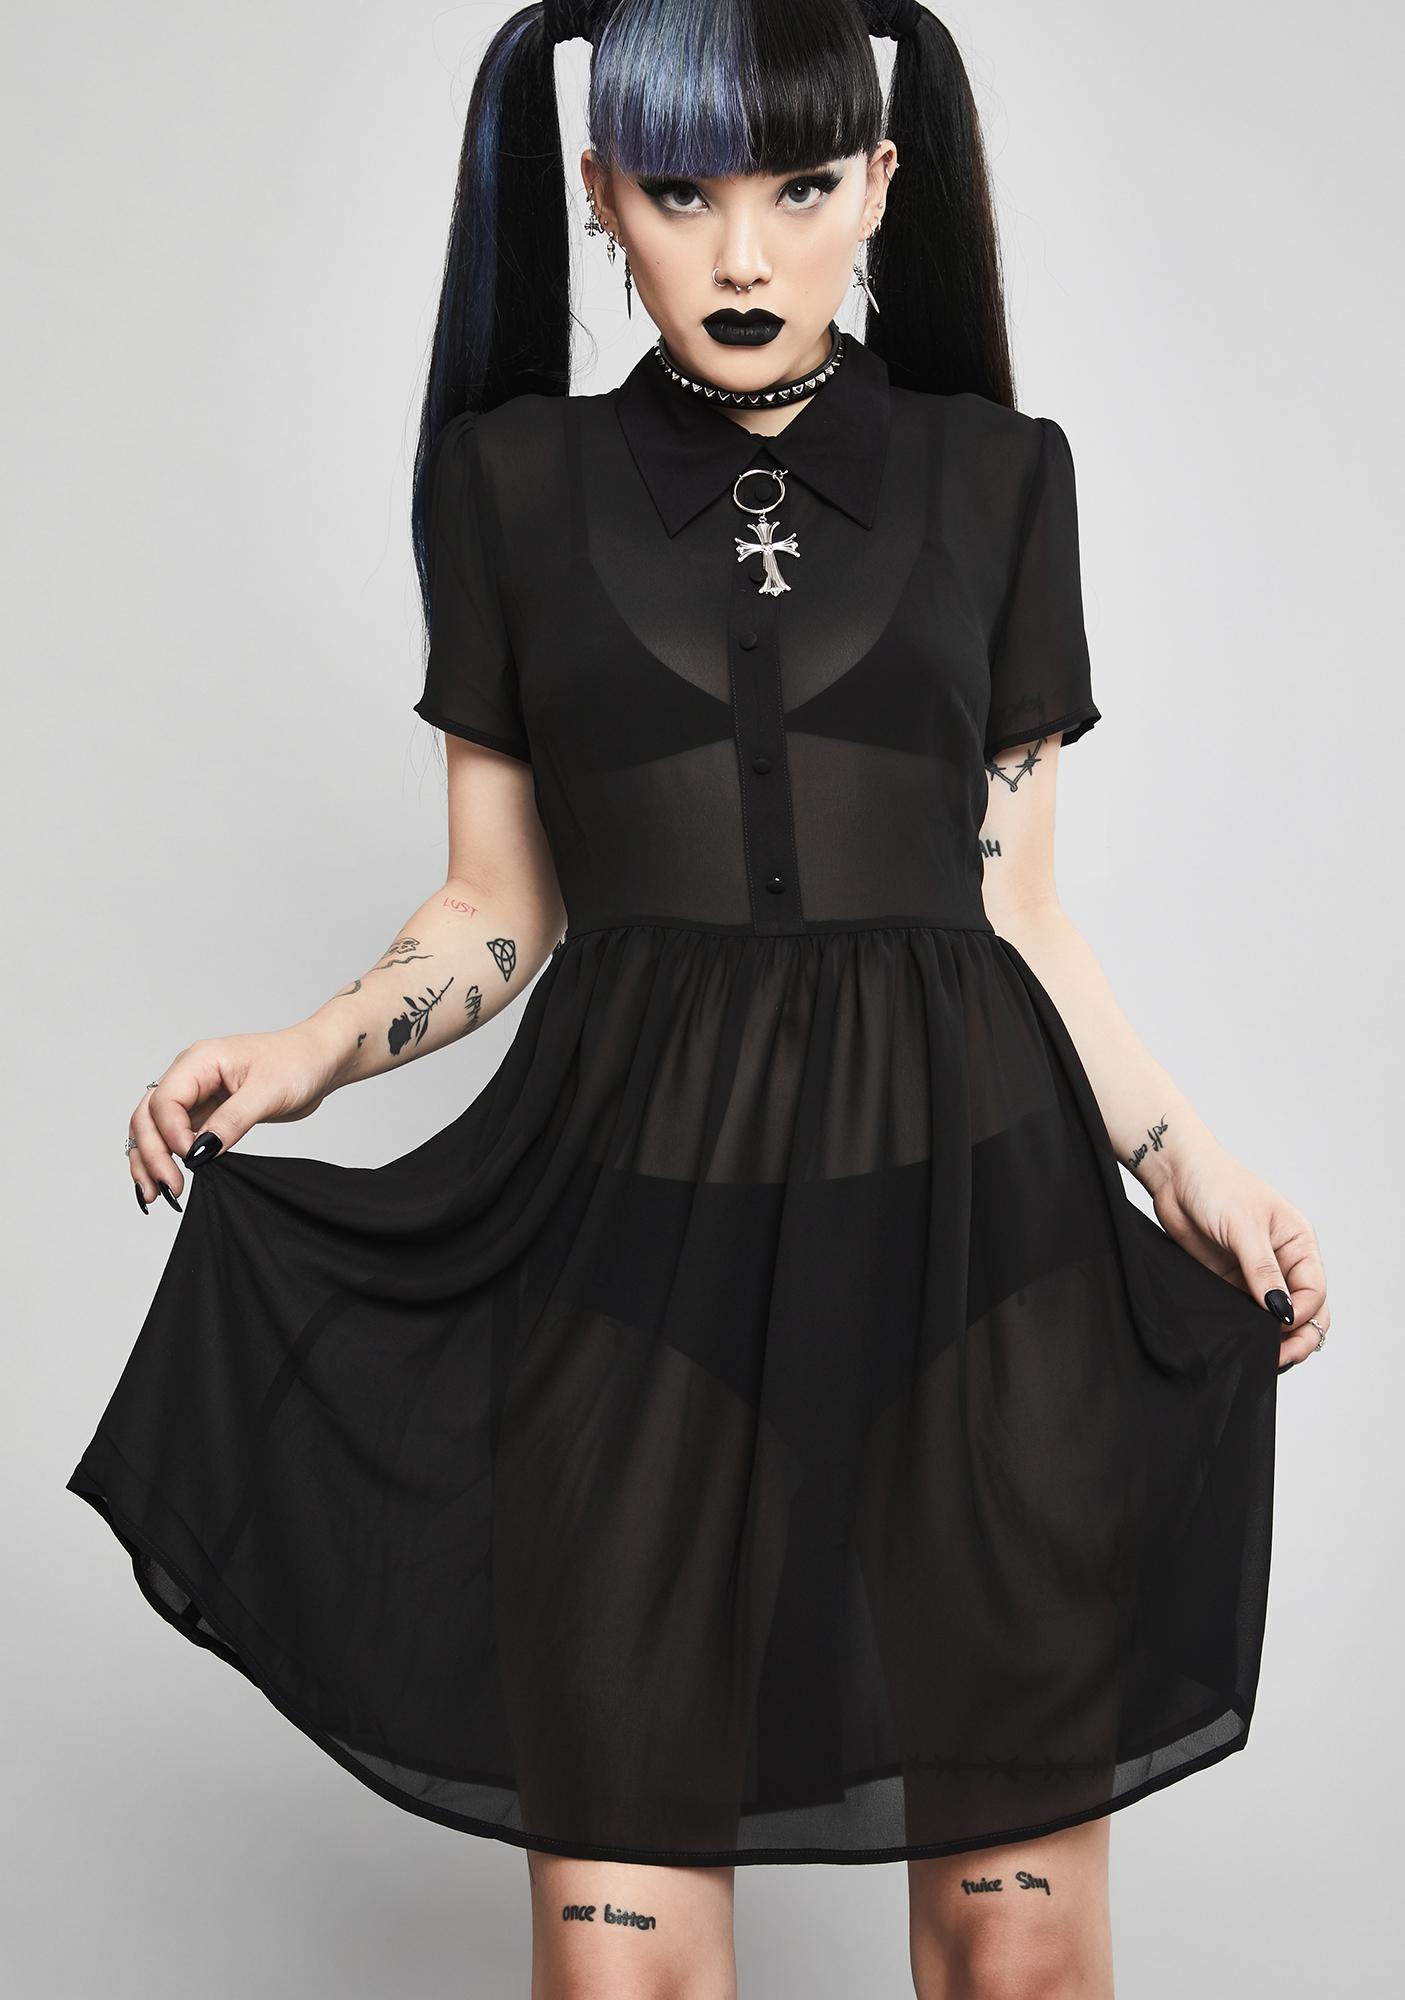 black dress doll